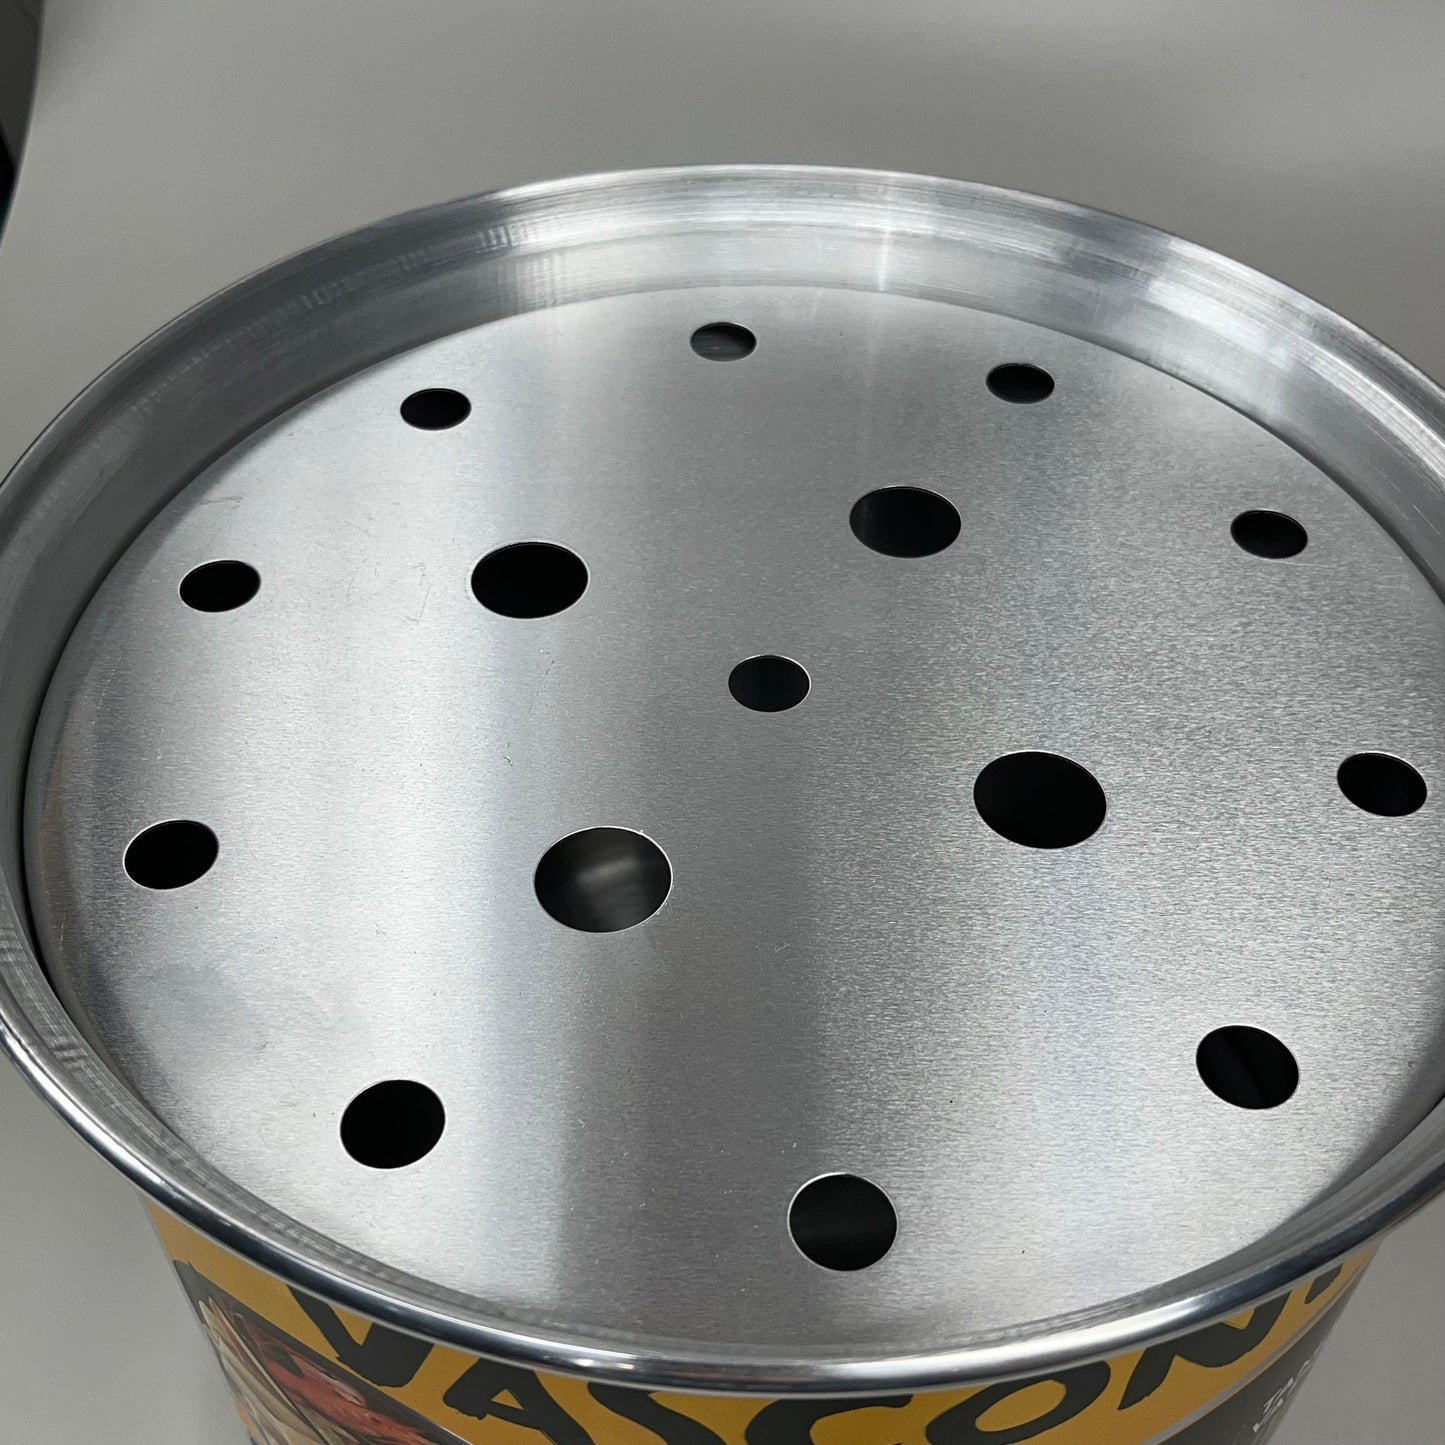 VASCONIA Steamer-pot Aluminum Stainless 16 Quart #713411